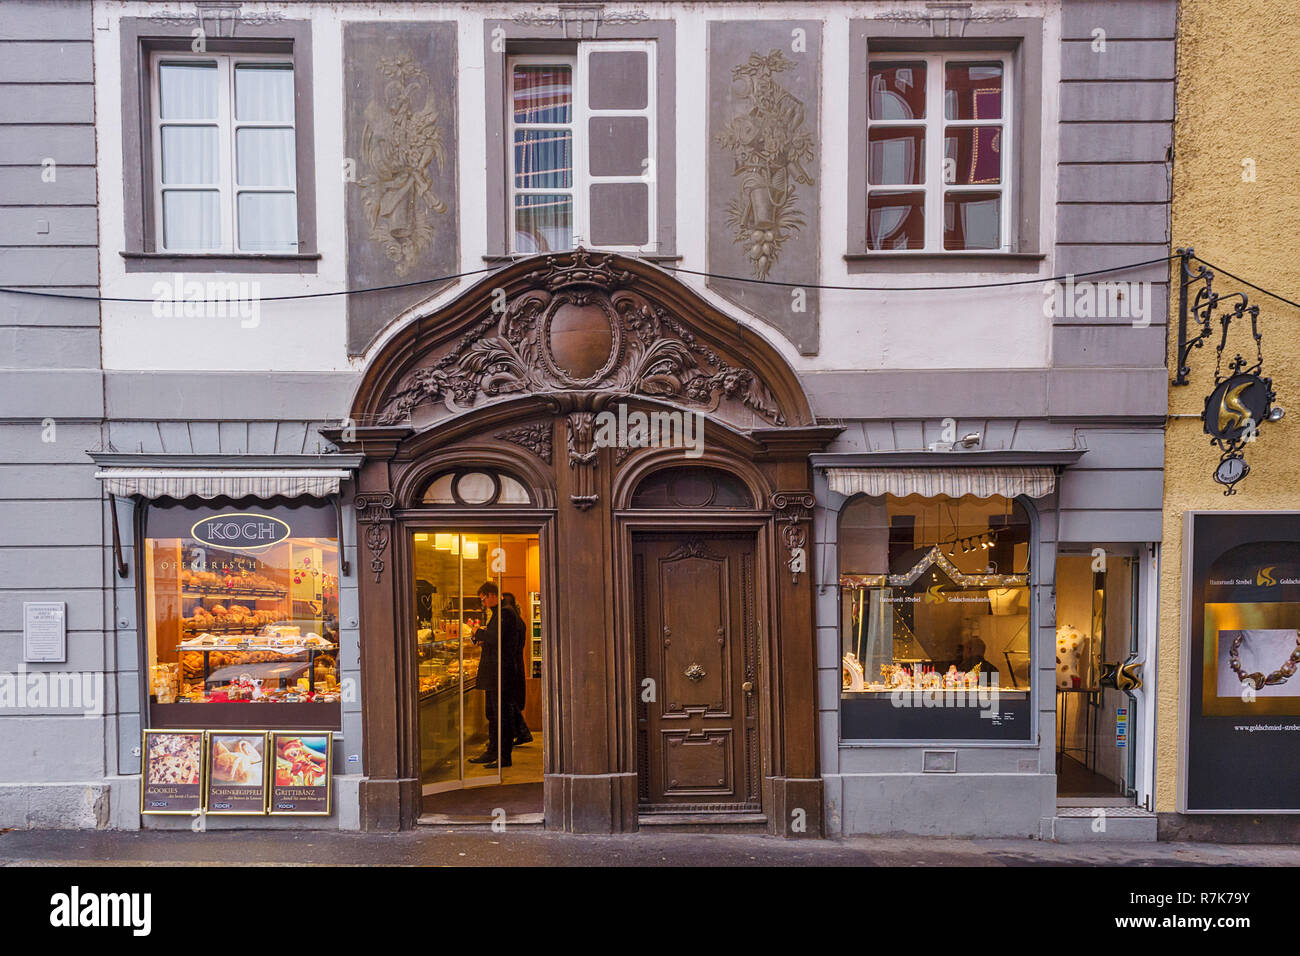 Bemalte Fassade einer Bäckerei auf kramgasse Straße in Luzern, Schweiz Stockfoto